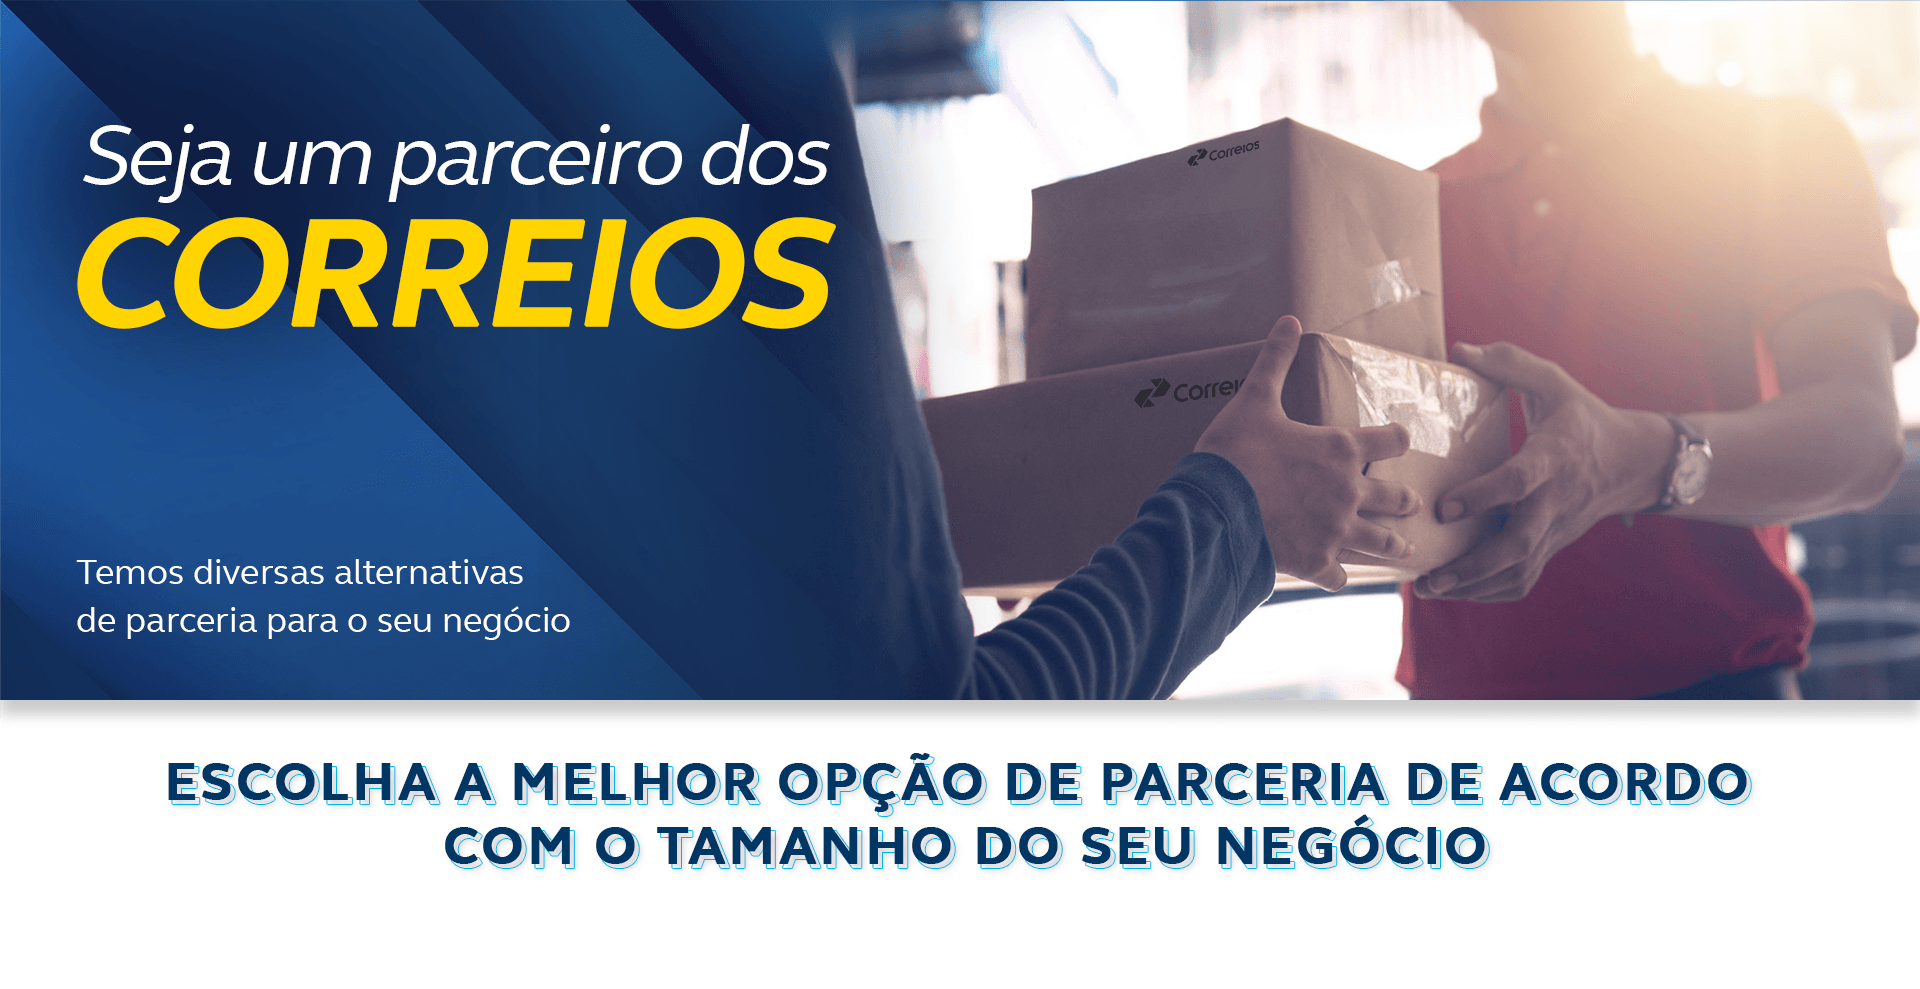 Seja um parceiro dos Correios. Diversas alternativas de parceria com o maior operador logístico do Brasil. Escolha a melhor opção de parceria de acordo com o tamanho do seu negócio.